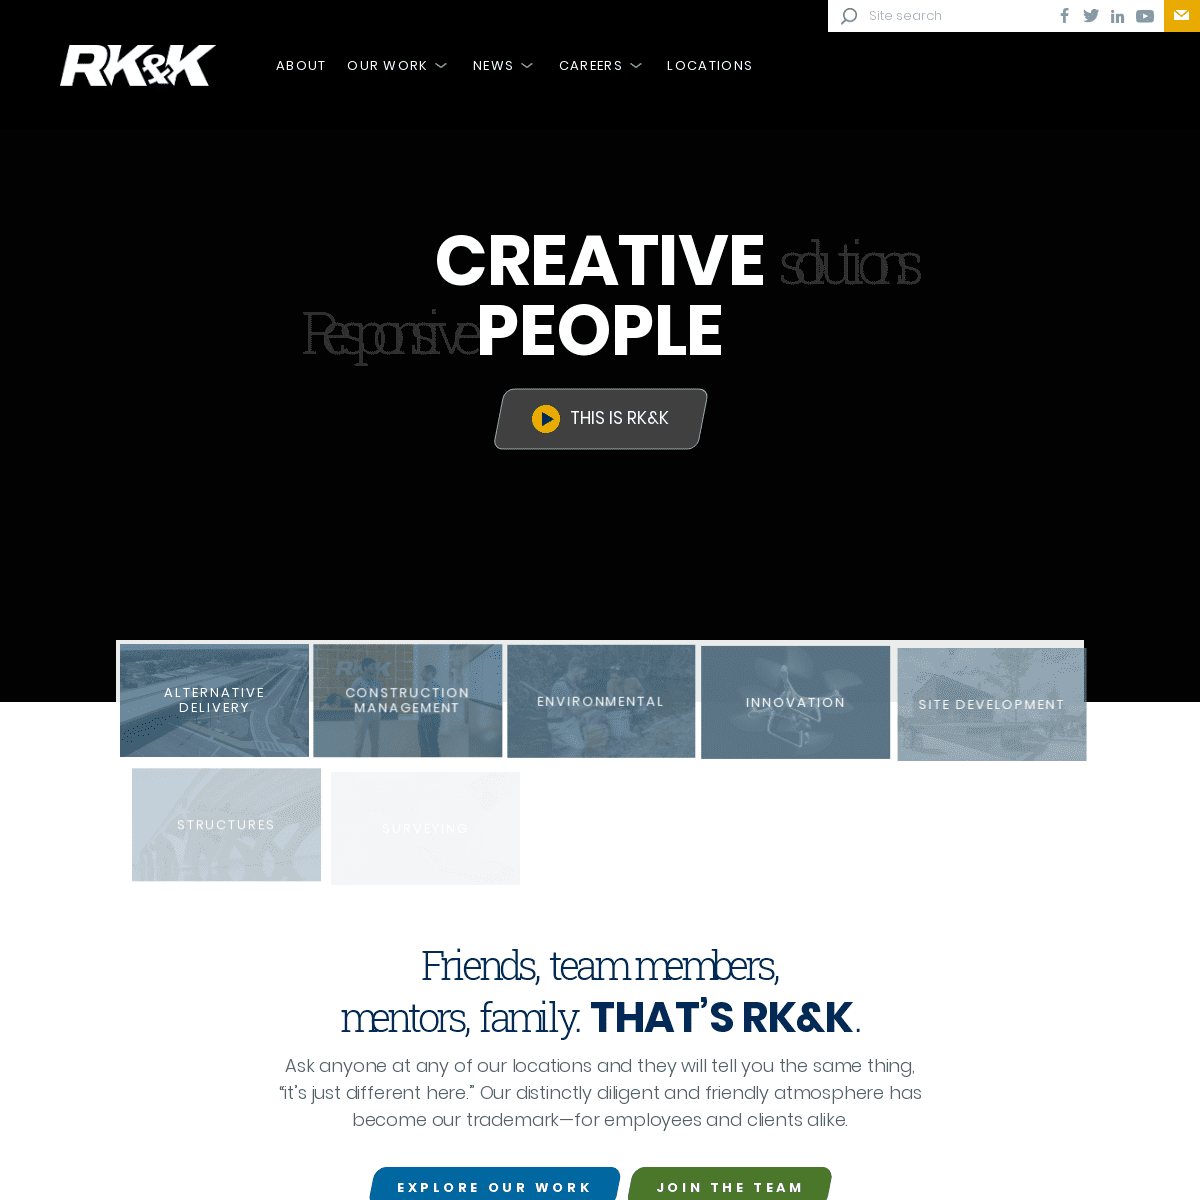 A complete backup of rkk.com